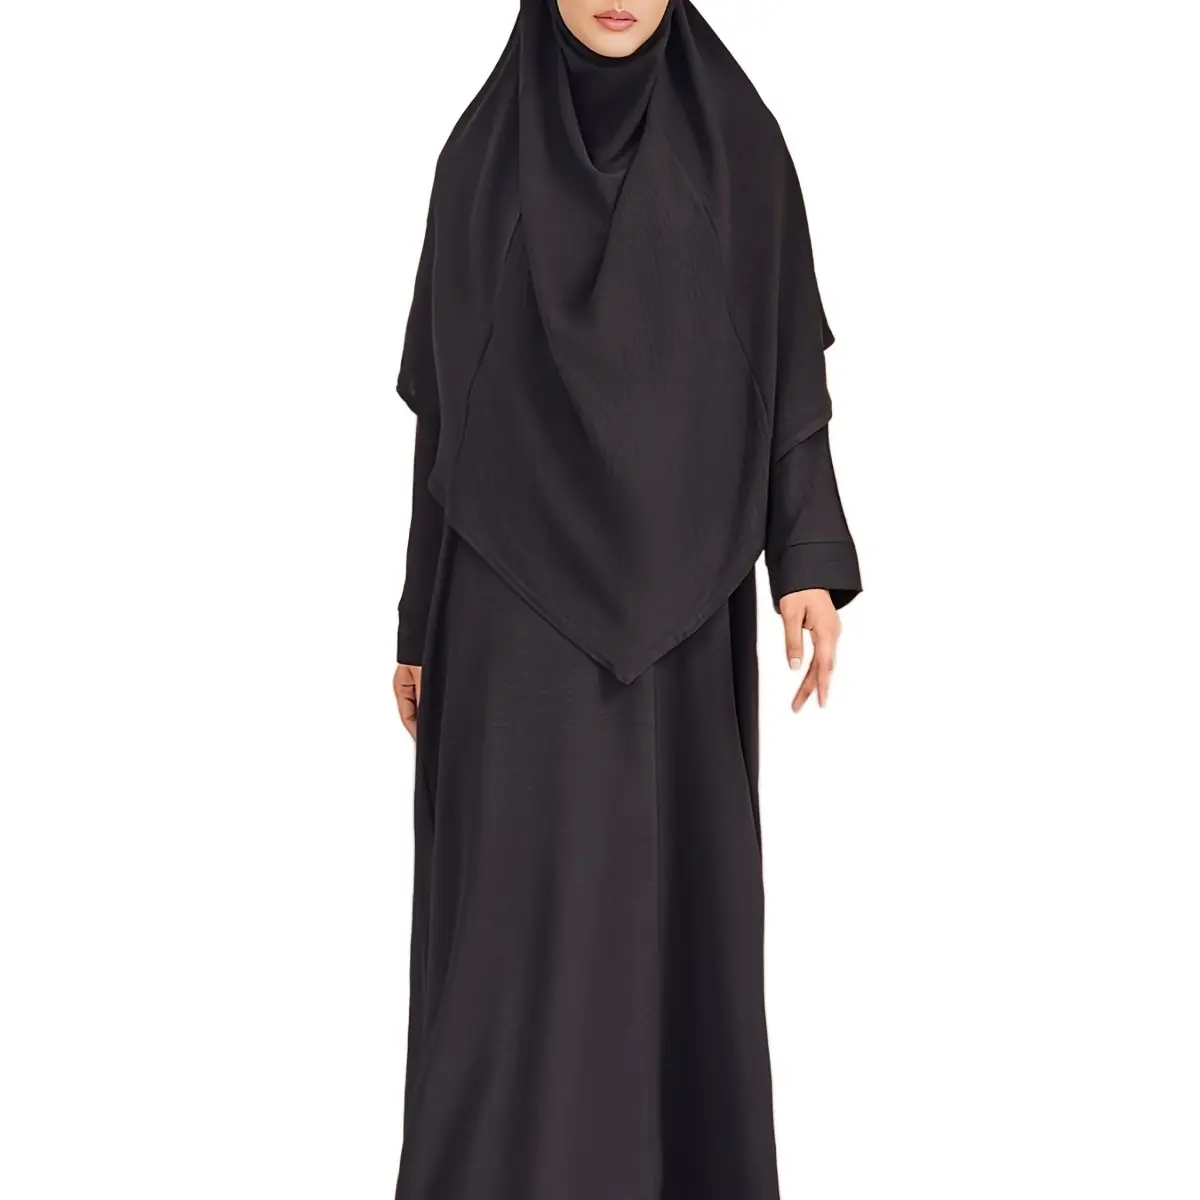 Mukena Indonesia ukuran besar, baju gamis Abaya etnik Muslim Timur Tengah 2 potong